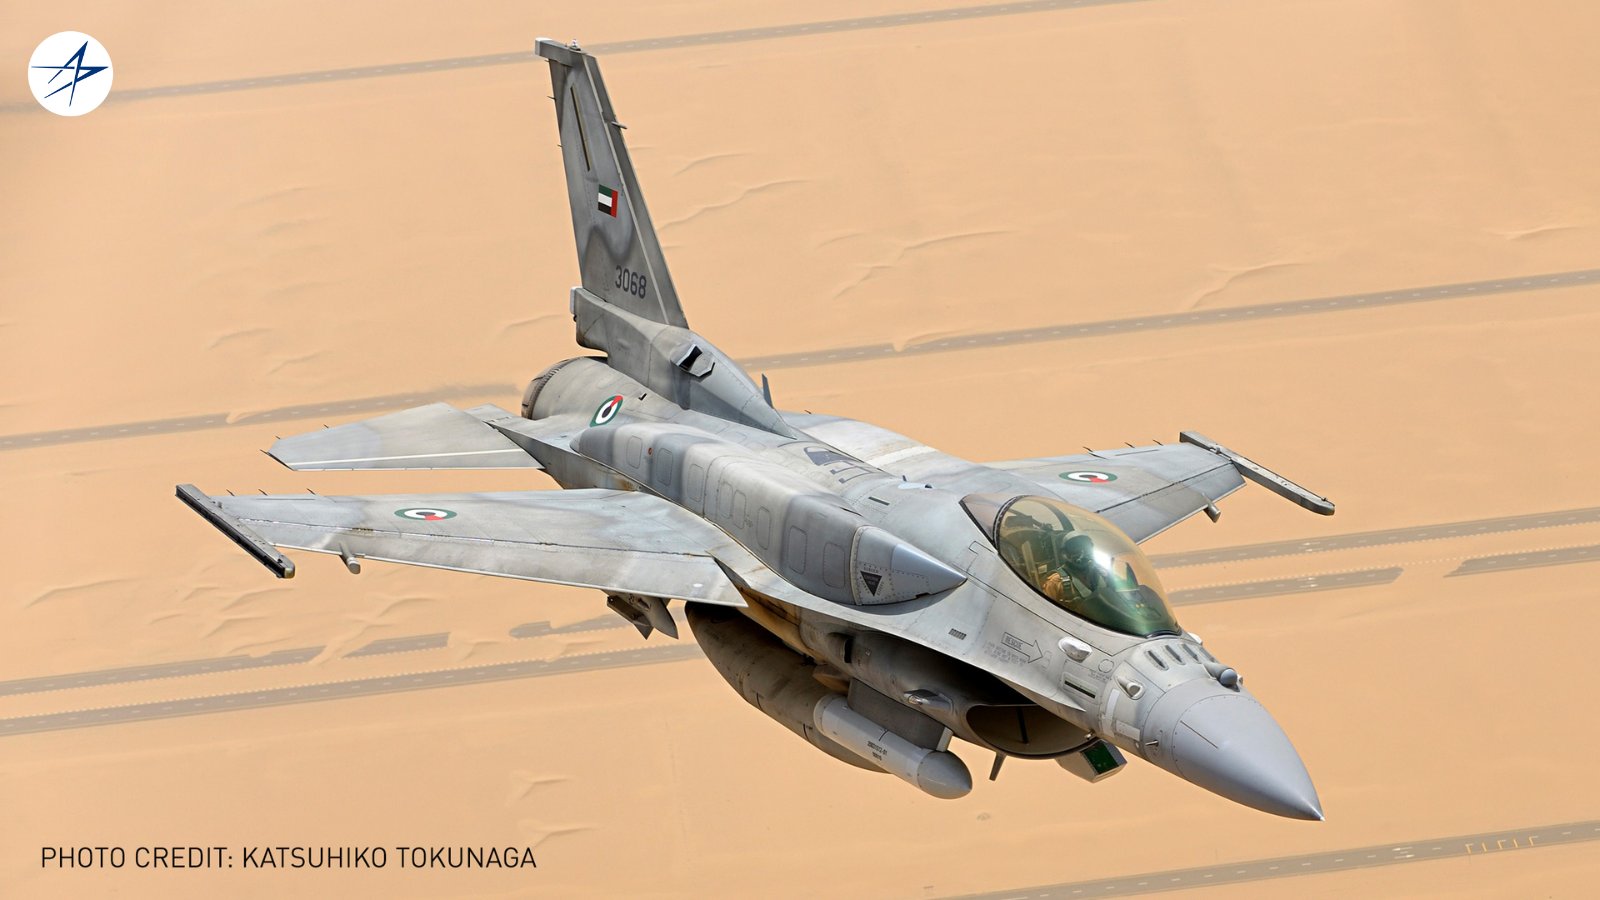 الإمارات تعلن عن صفقة مع لوكهيد مارتن لتحديث مقاتلات إف-16 GMQ5knhWoAAbHQb?format=jpg&name=large